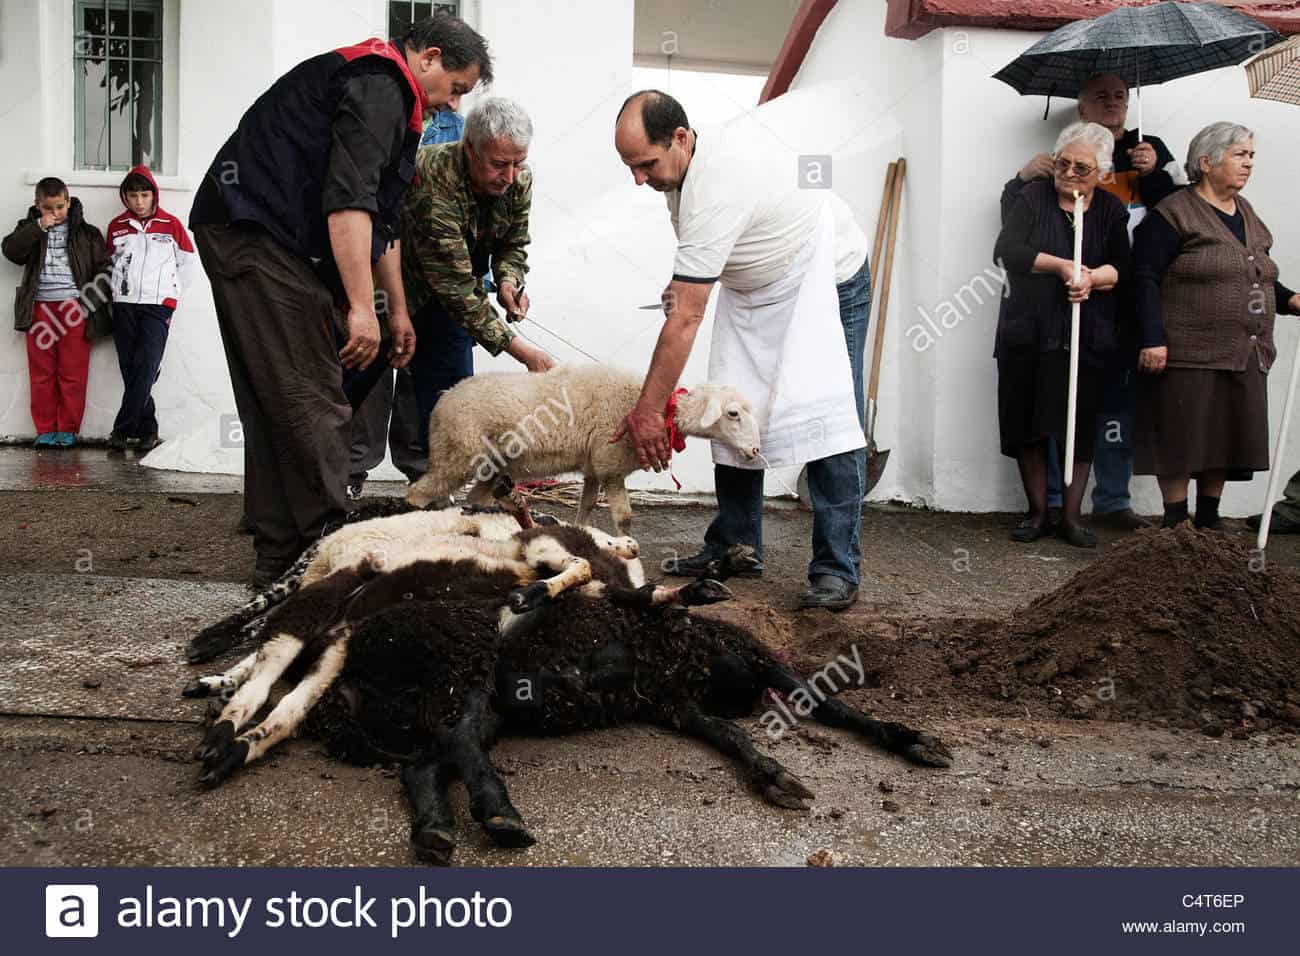 Απετράπησαν οι τελετουργικές σφαγές- θυσίες ζώων (Αναστενάρια), στο Λαγκαδά Θεσσαλονίκης και στις Σέρρες/RITUAL ANIMAL SACRIFICES (ANASTENARIA) WERE PREVENTED IN LAGADAS (THESSALONIKI) AND SERRES